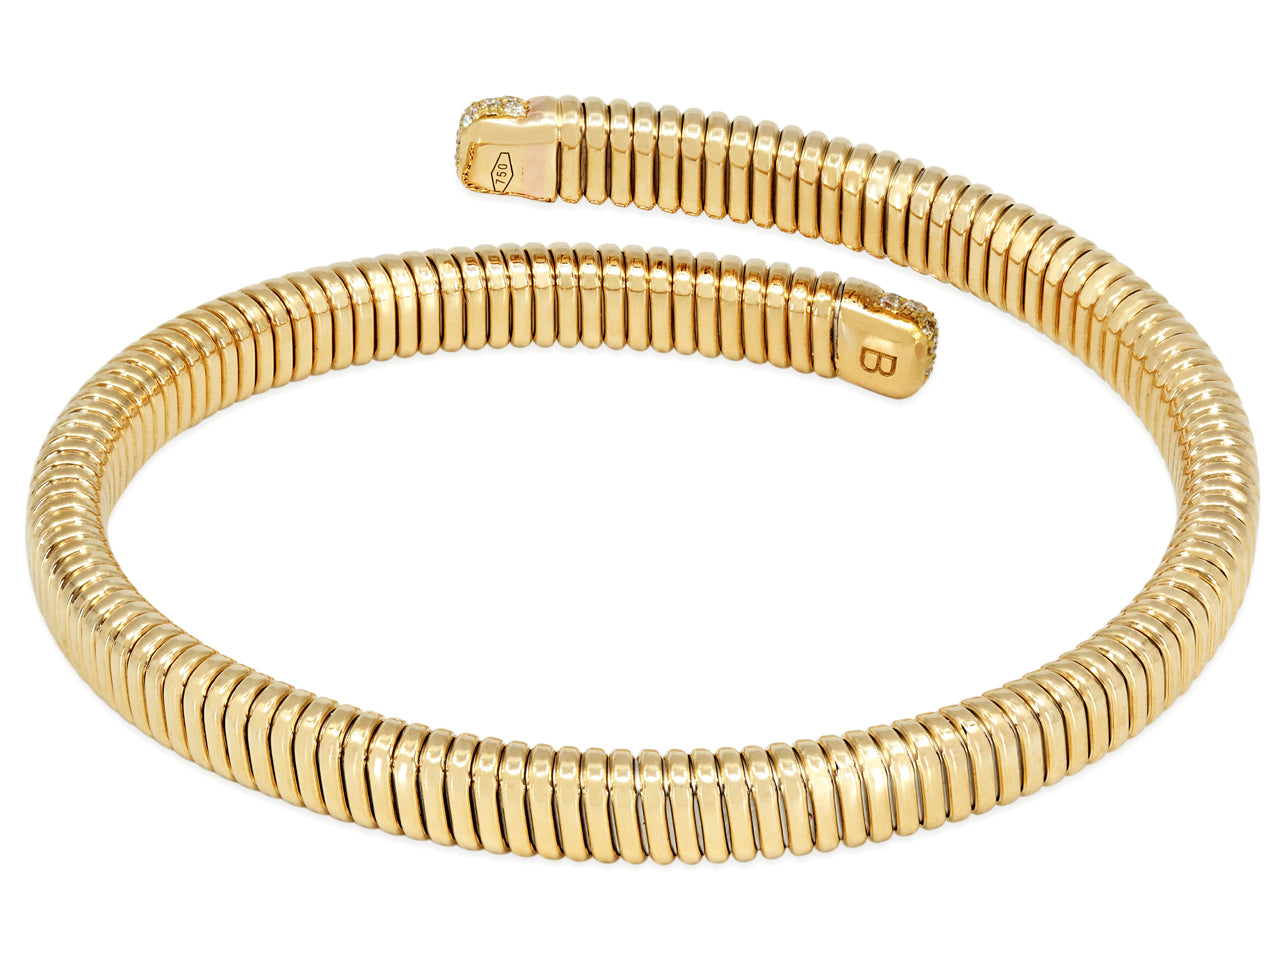 Tubogas Diamond Bypass Bracelet in 18K Gold, by Beladora